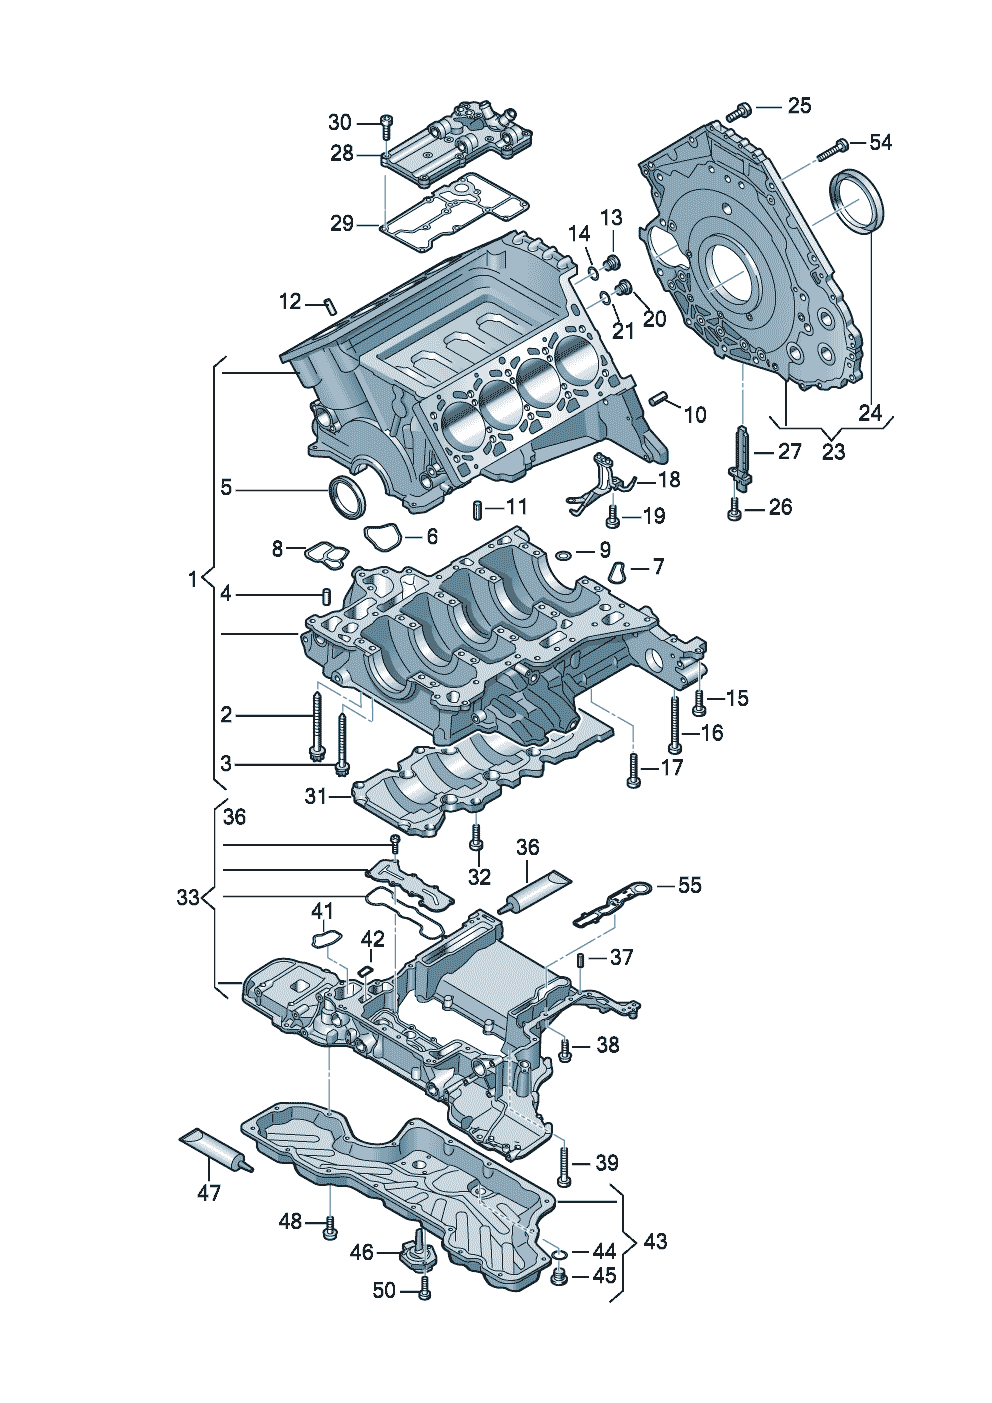 oil sumpSealing flangecylinder block 4.0 ltr. - Audi A8/S8 quattro - a8q